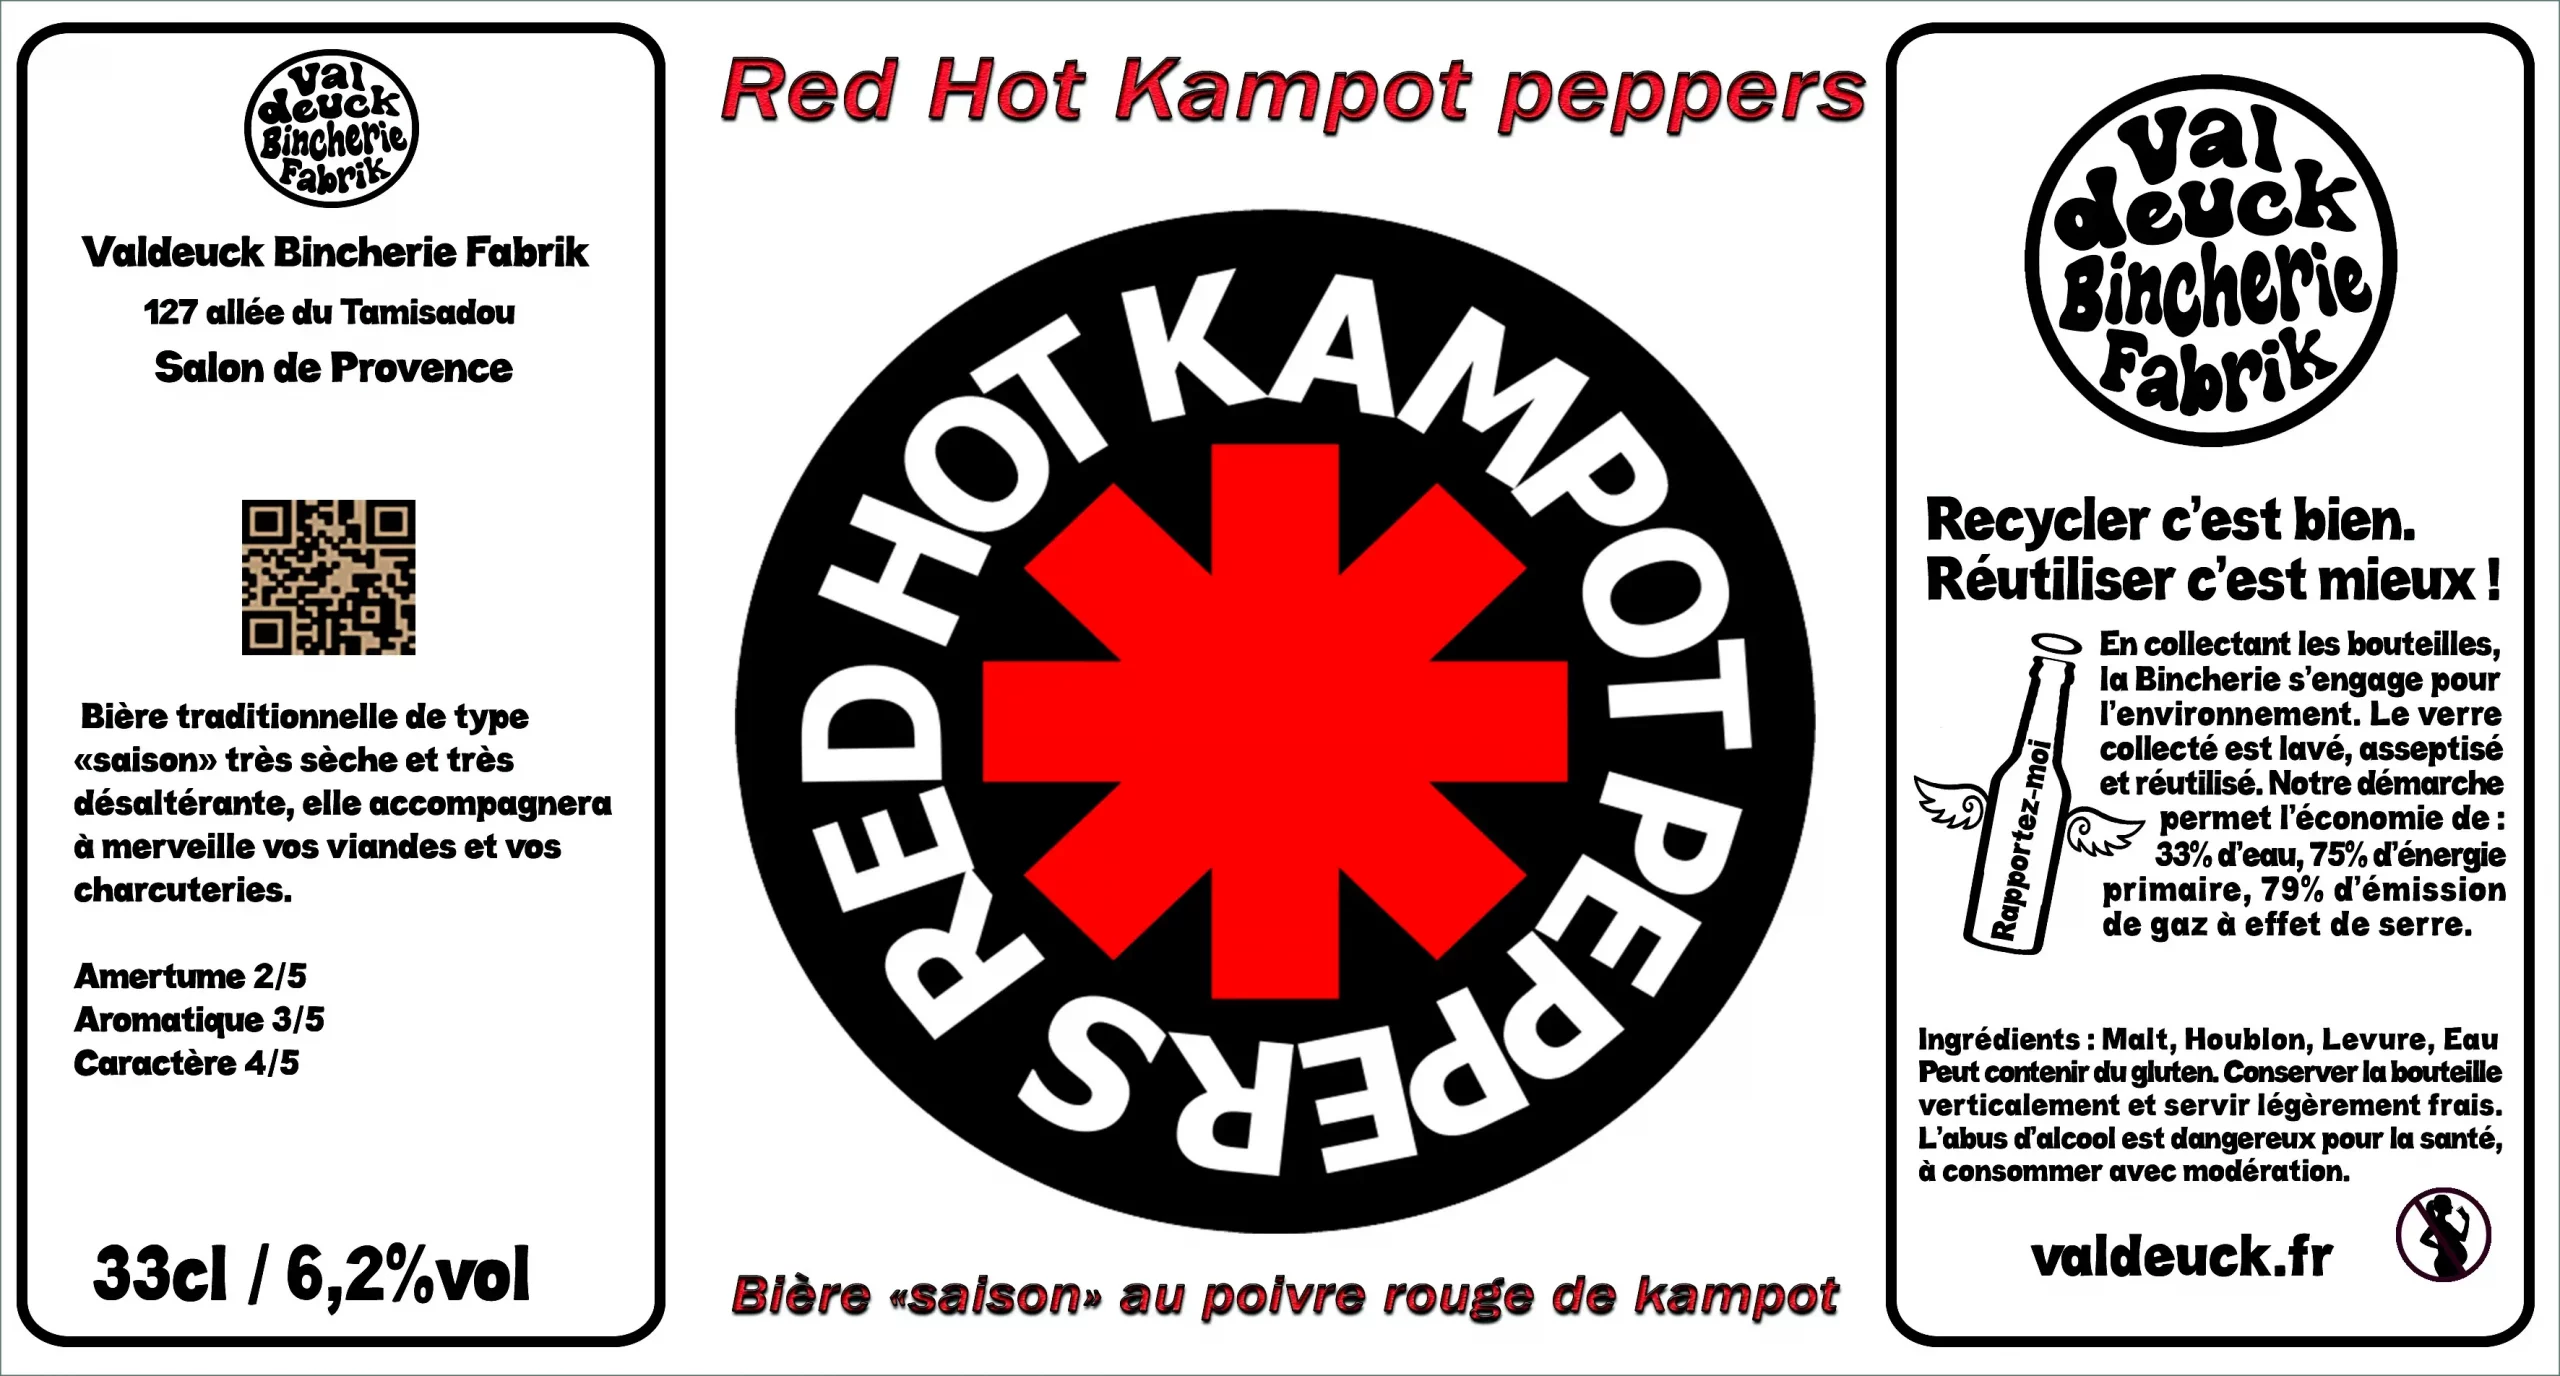 Red Hot Kampot Pepper (33cl) valdeuck bincherie fabrik salon de provence